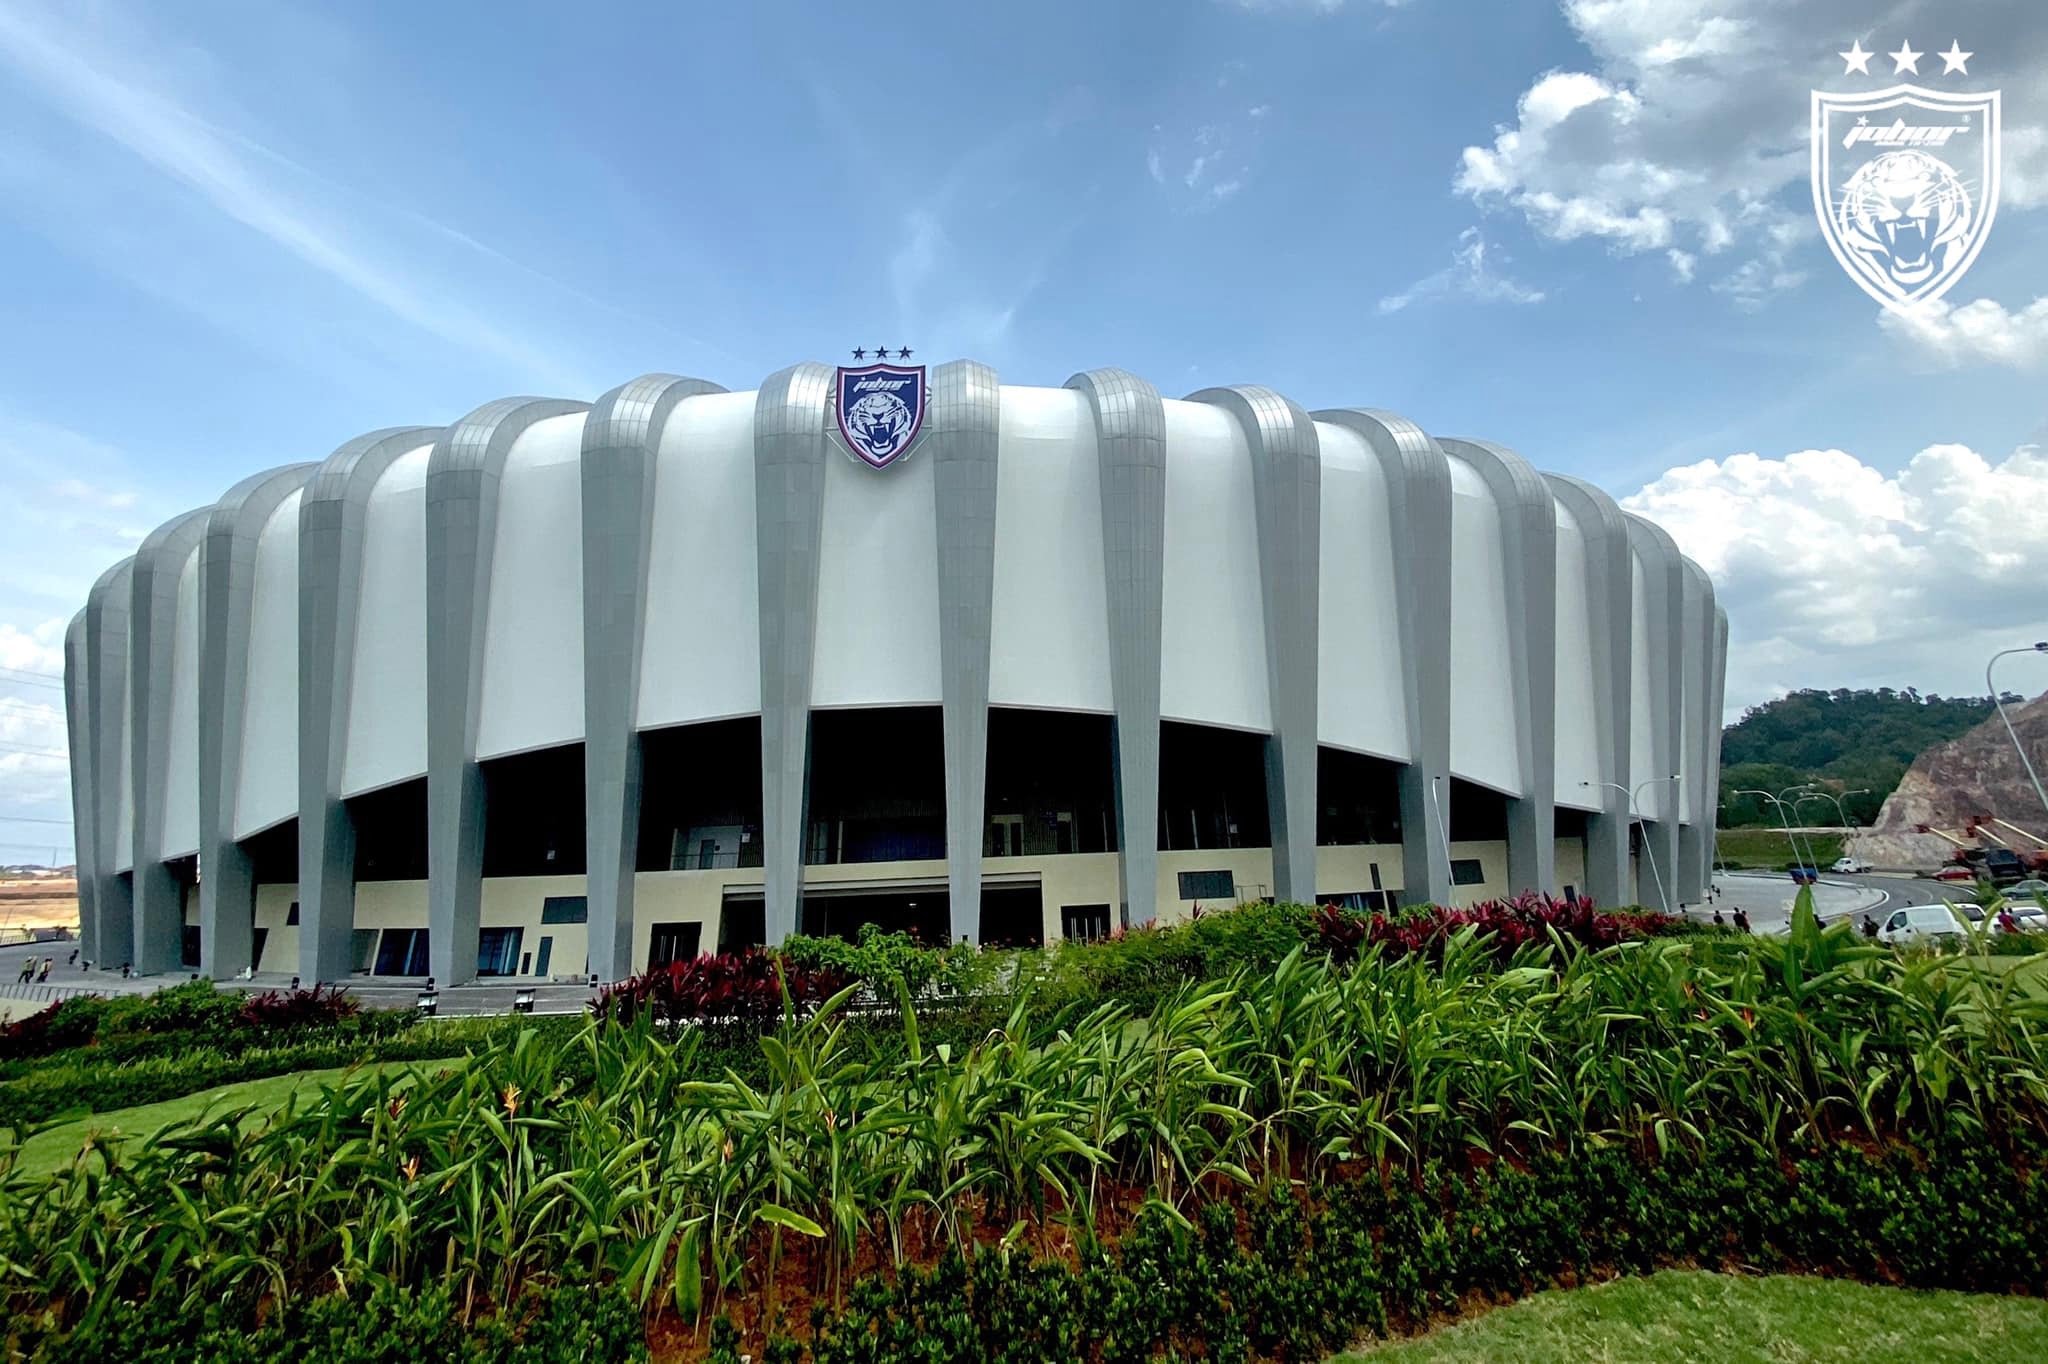 JDT Kelab Pertama Mempunyai Crest Di Stadium, Simbol Kebanggaan Harimau Selatan